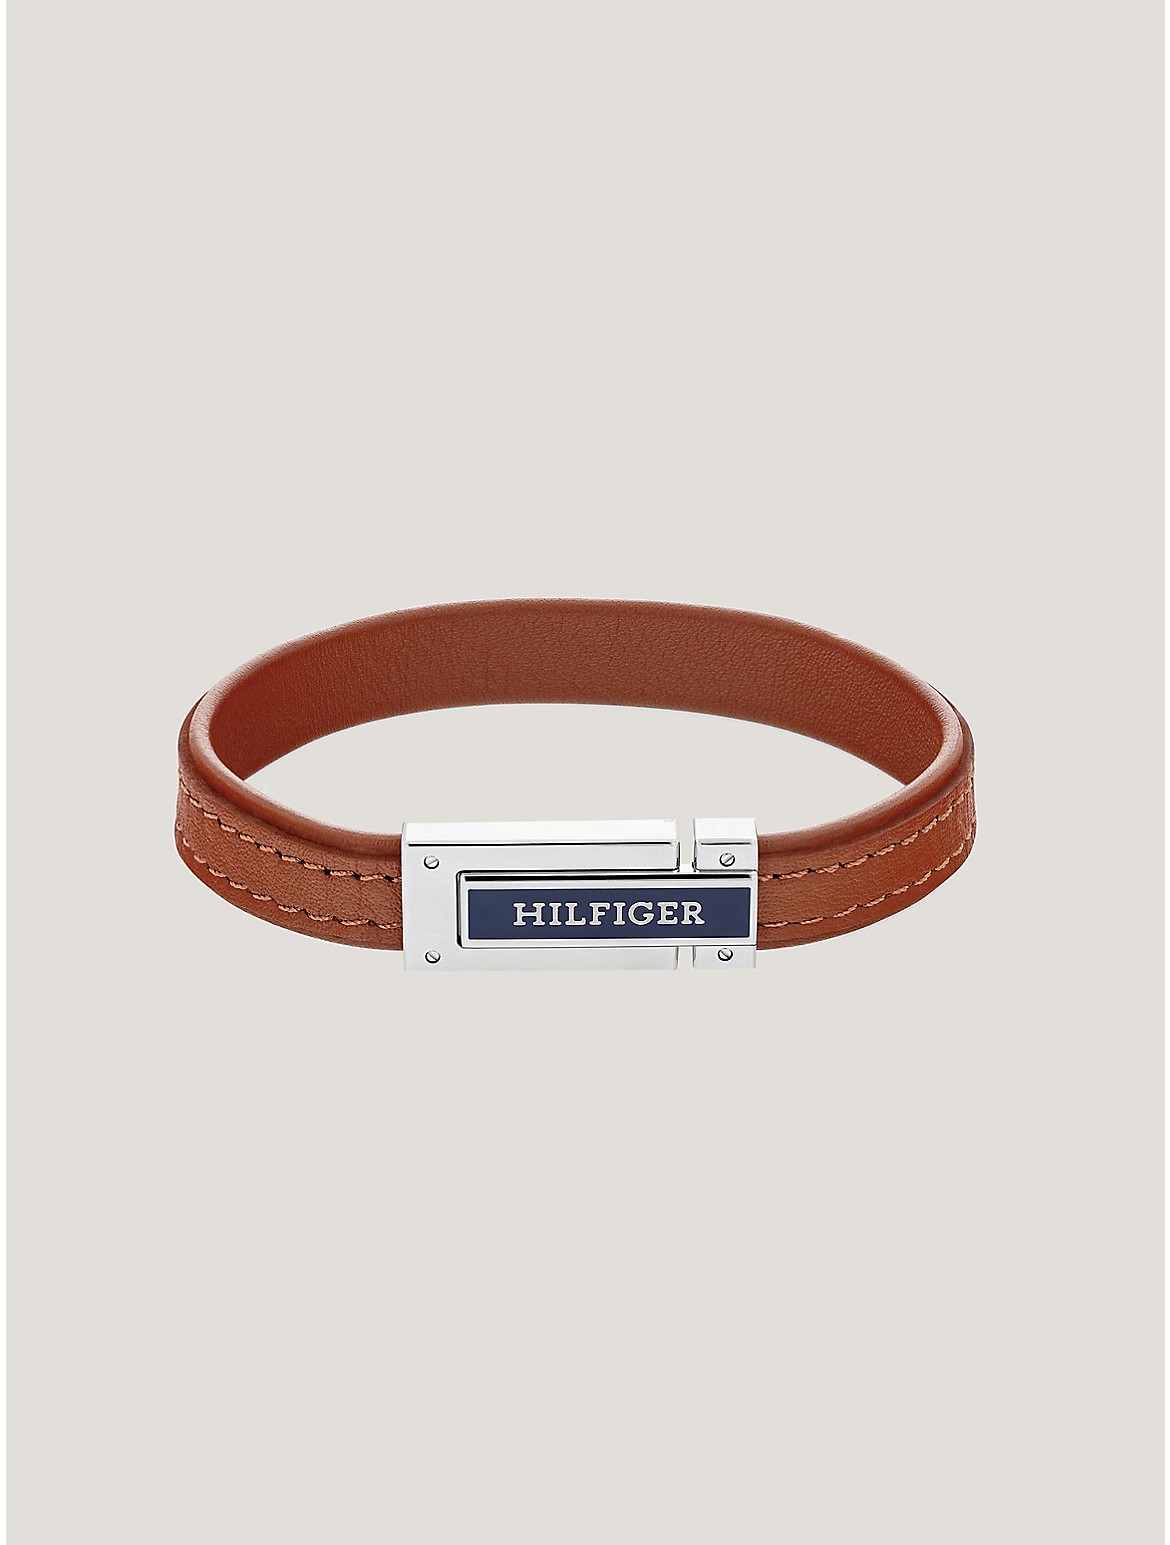 Tommy Hilfiger Men's Hilfiger Light Brown Leather Bracelet